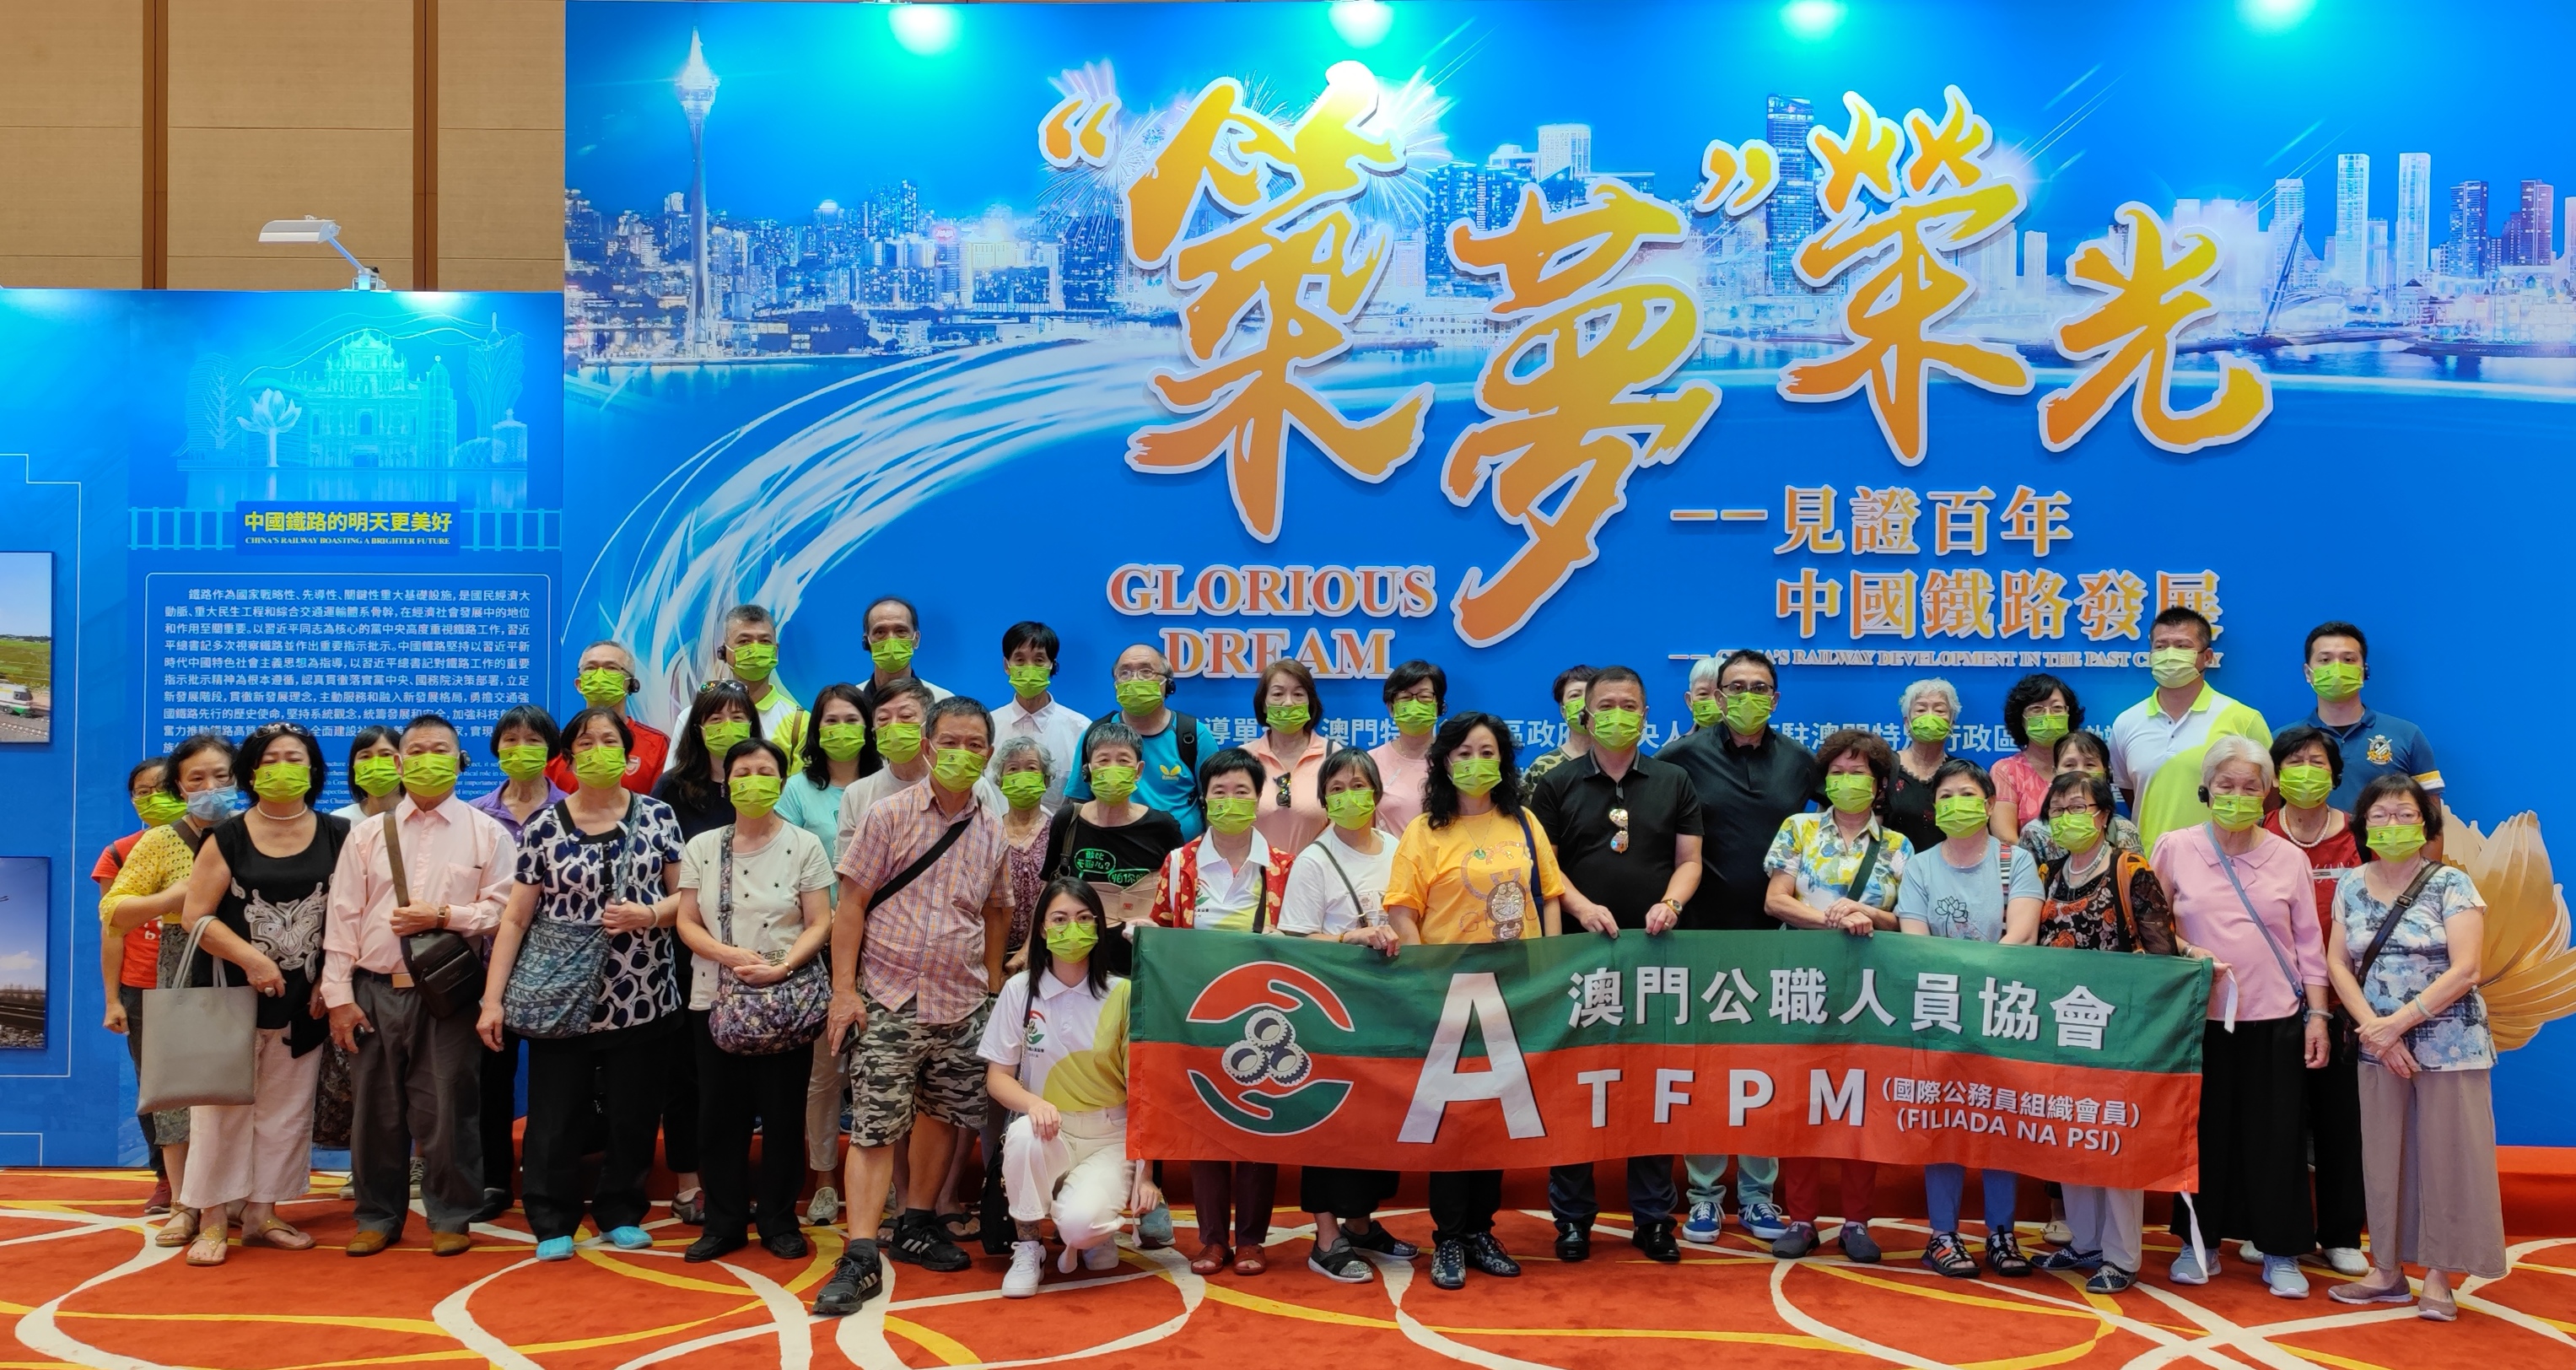 澳門公職人員協會組織會員參觀「慶祝中國共產黨成立100周年大型主題圖片展」及「築夢榮光——見證百年中國鐵路發展主題展覽」